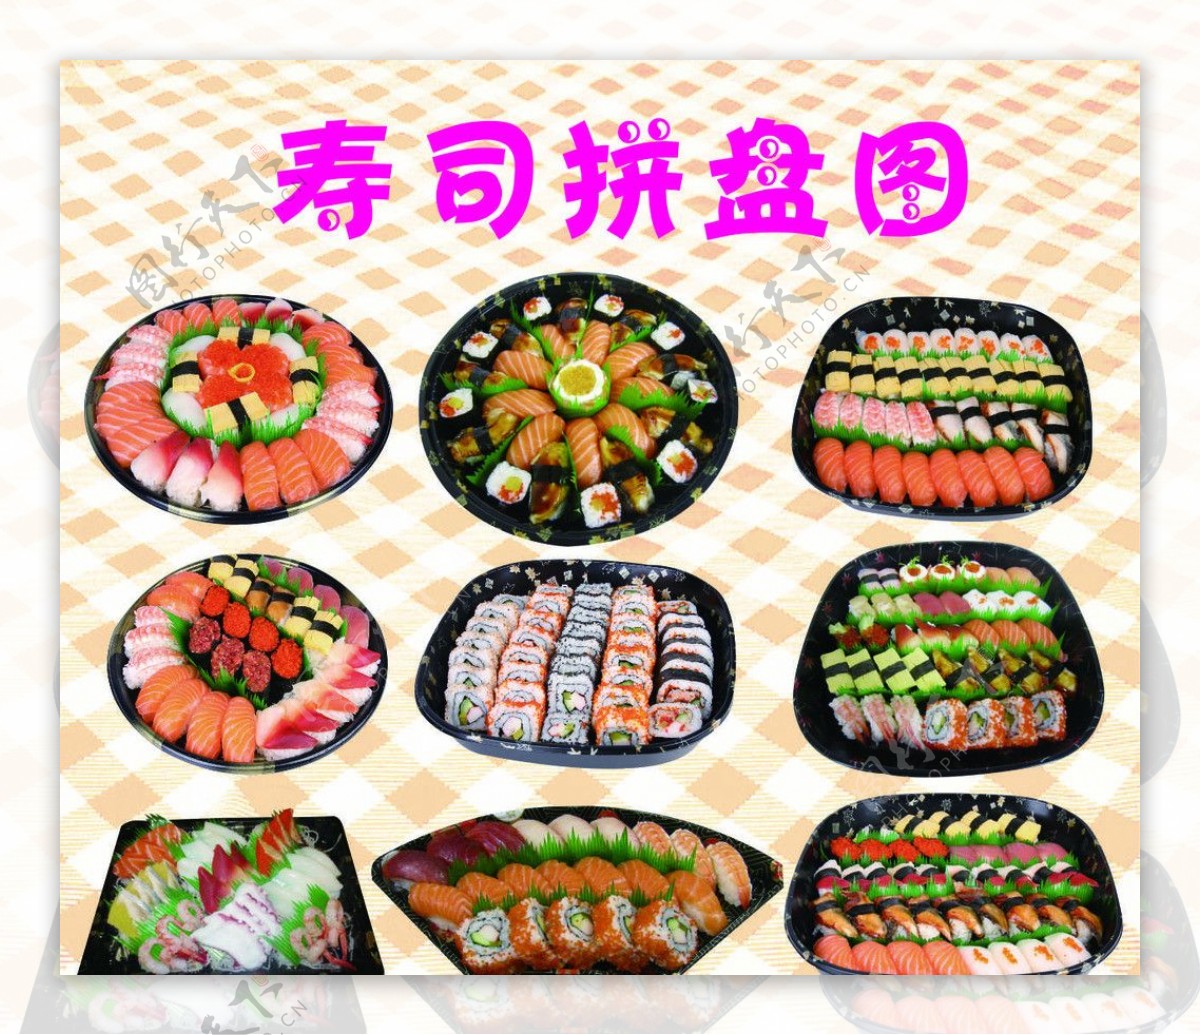 寿司拼盘图图片